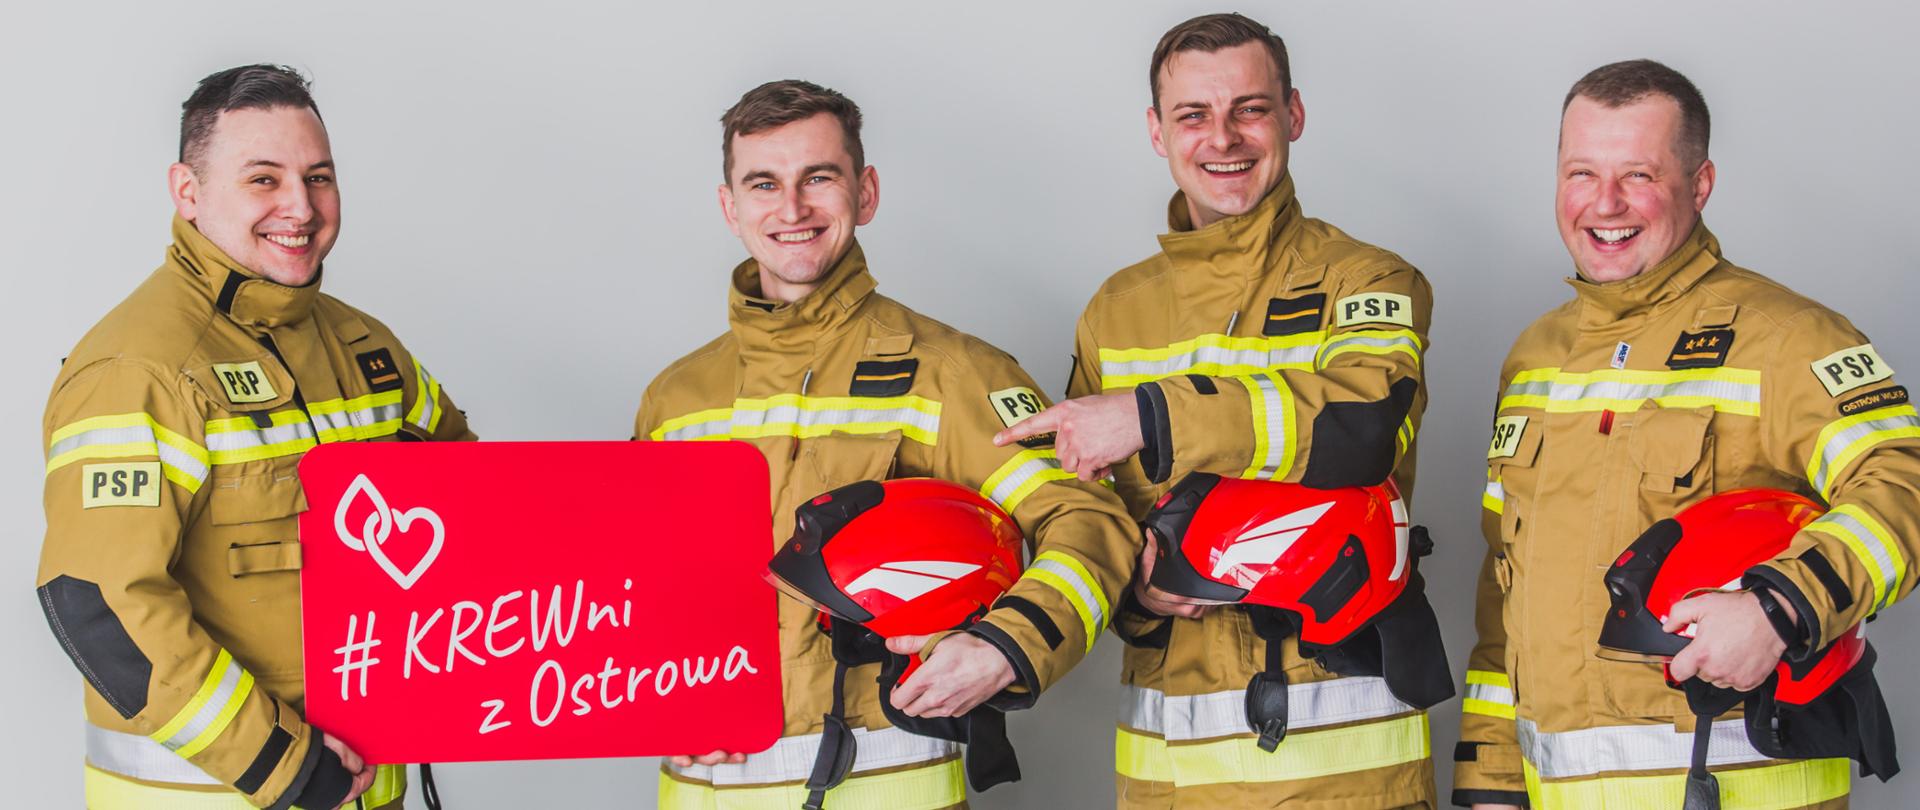 Czterech strażaków w ubraniach specjalnych stoi na jasnym tle, trzymając w rękach karty z hasłami promocyjnymi.